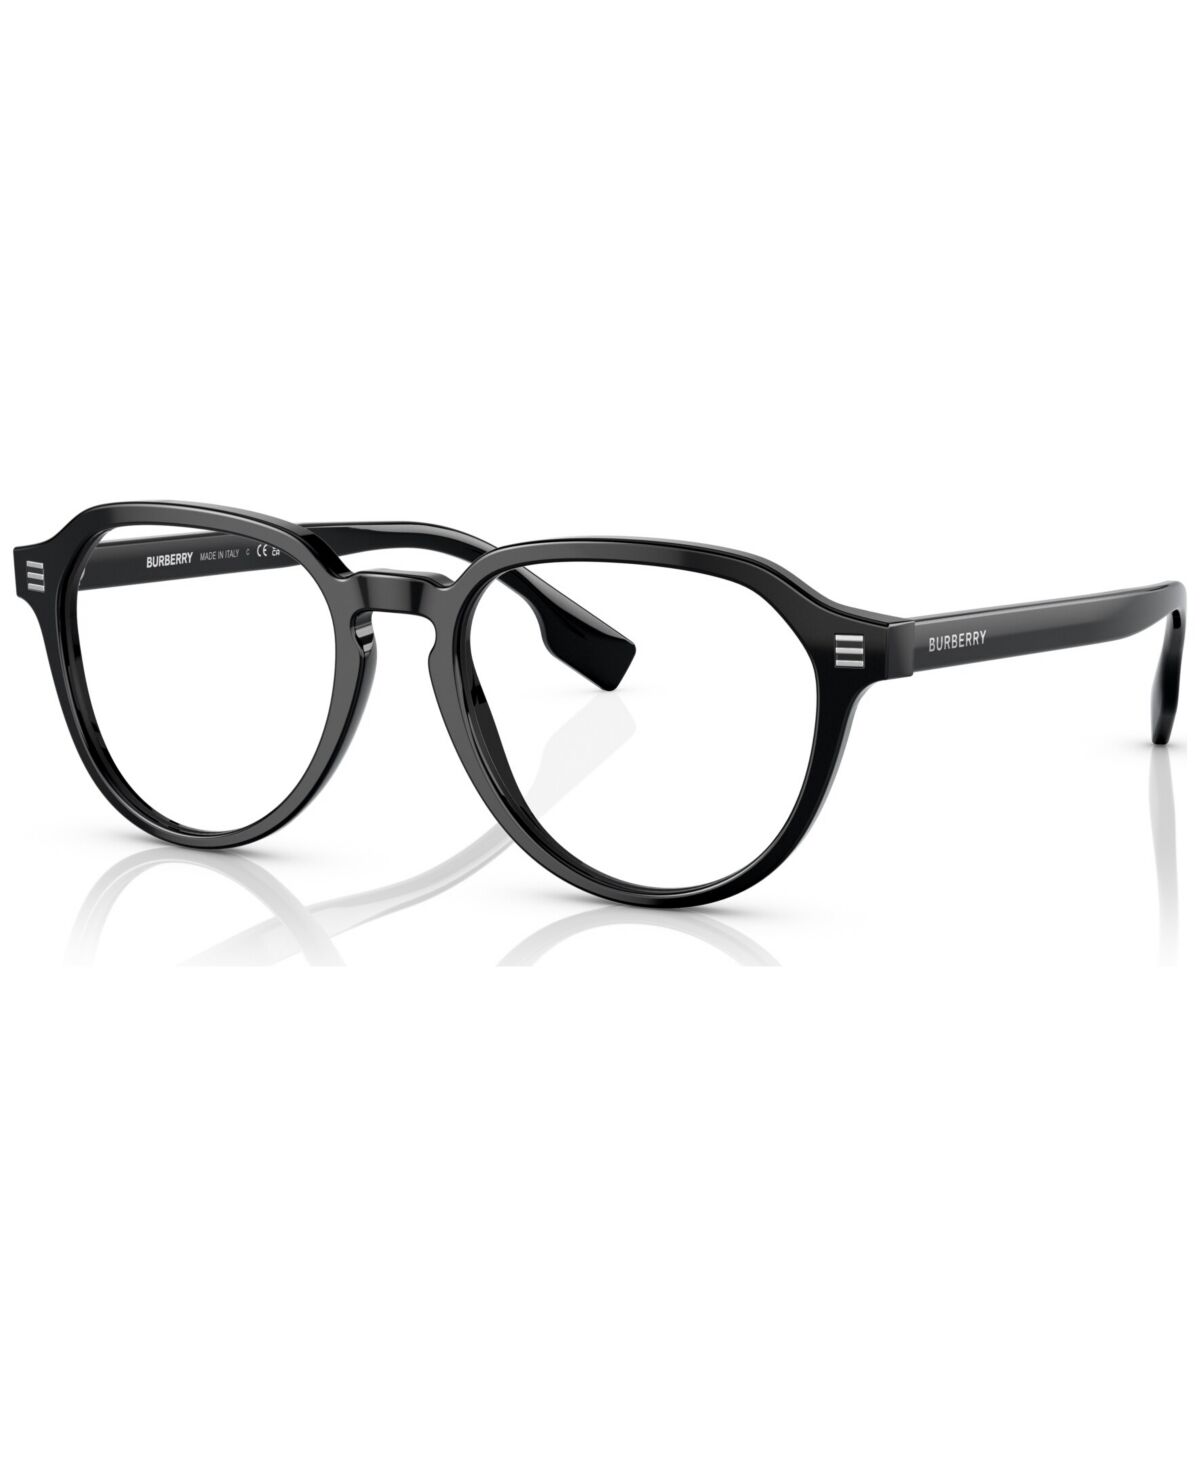 Burberry Men's Phantos Eyeglasses, BE236854-o - Black